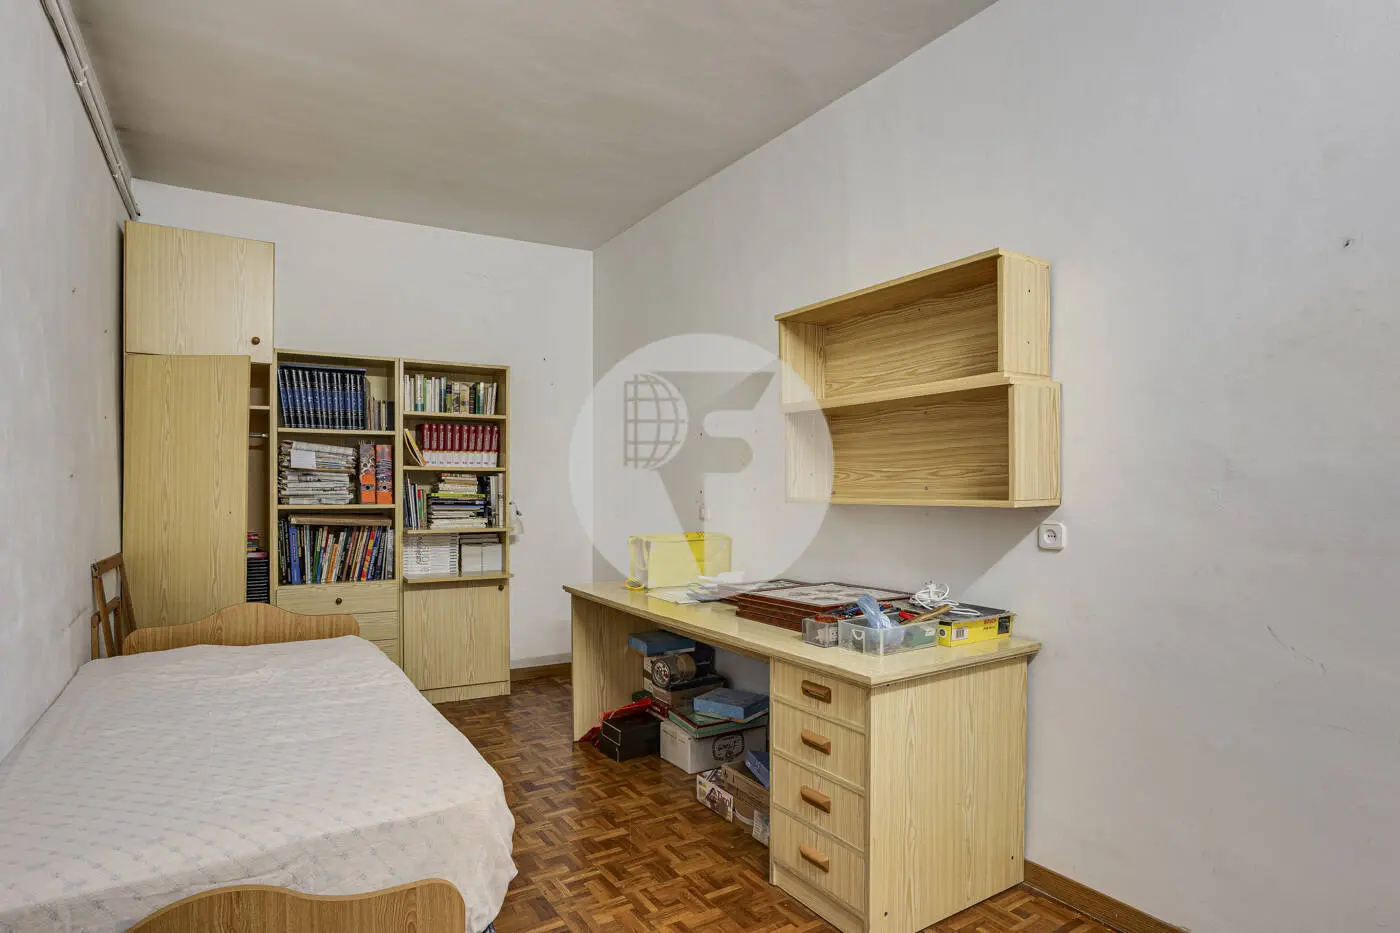 Apartament perfecte al centre del Barri Gòtic de Barcelona. 24